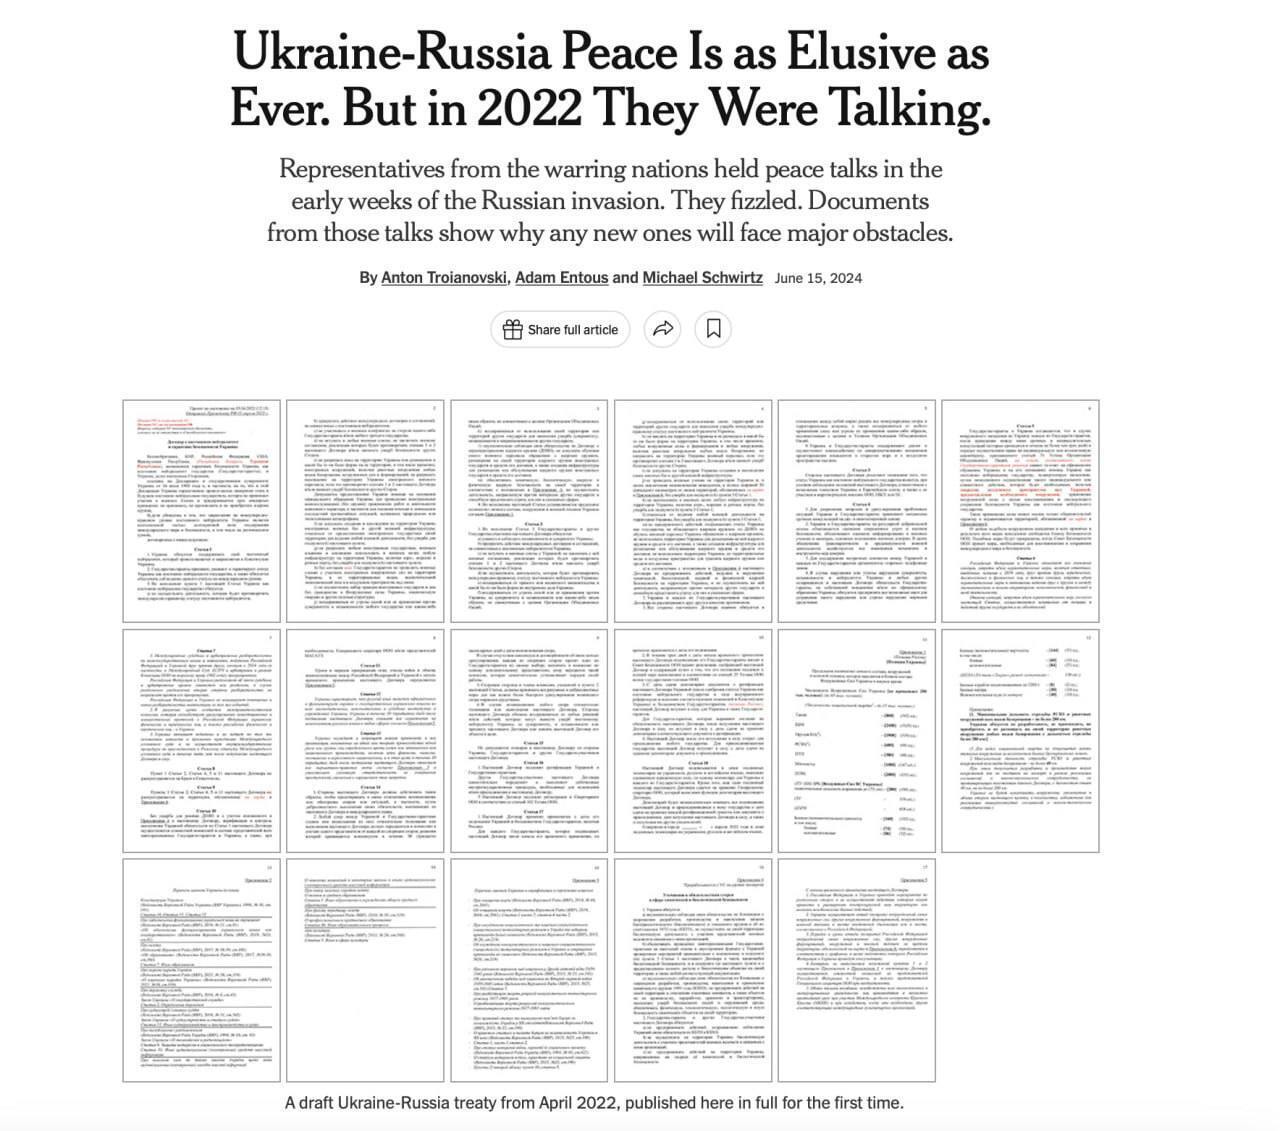 Опубликован полный проект украино-российского договора, который могли подписать в апреле в 2022 году